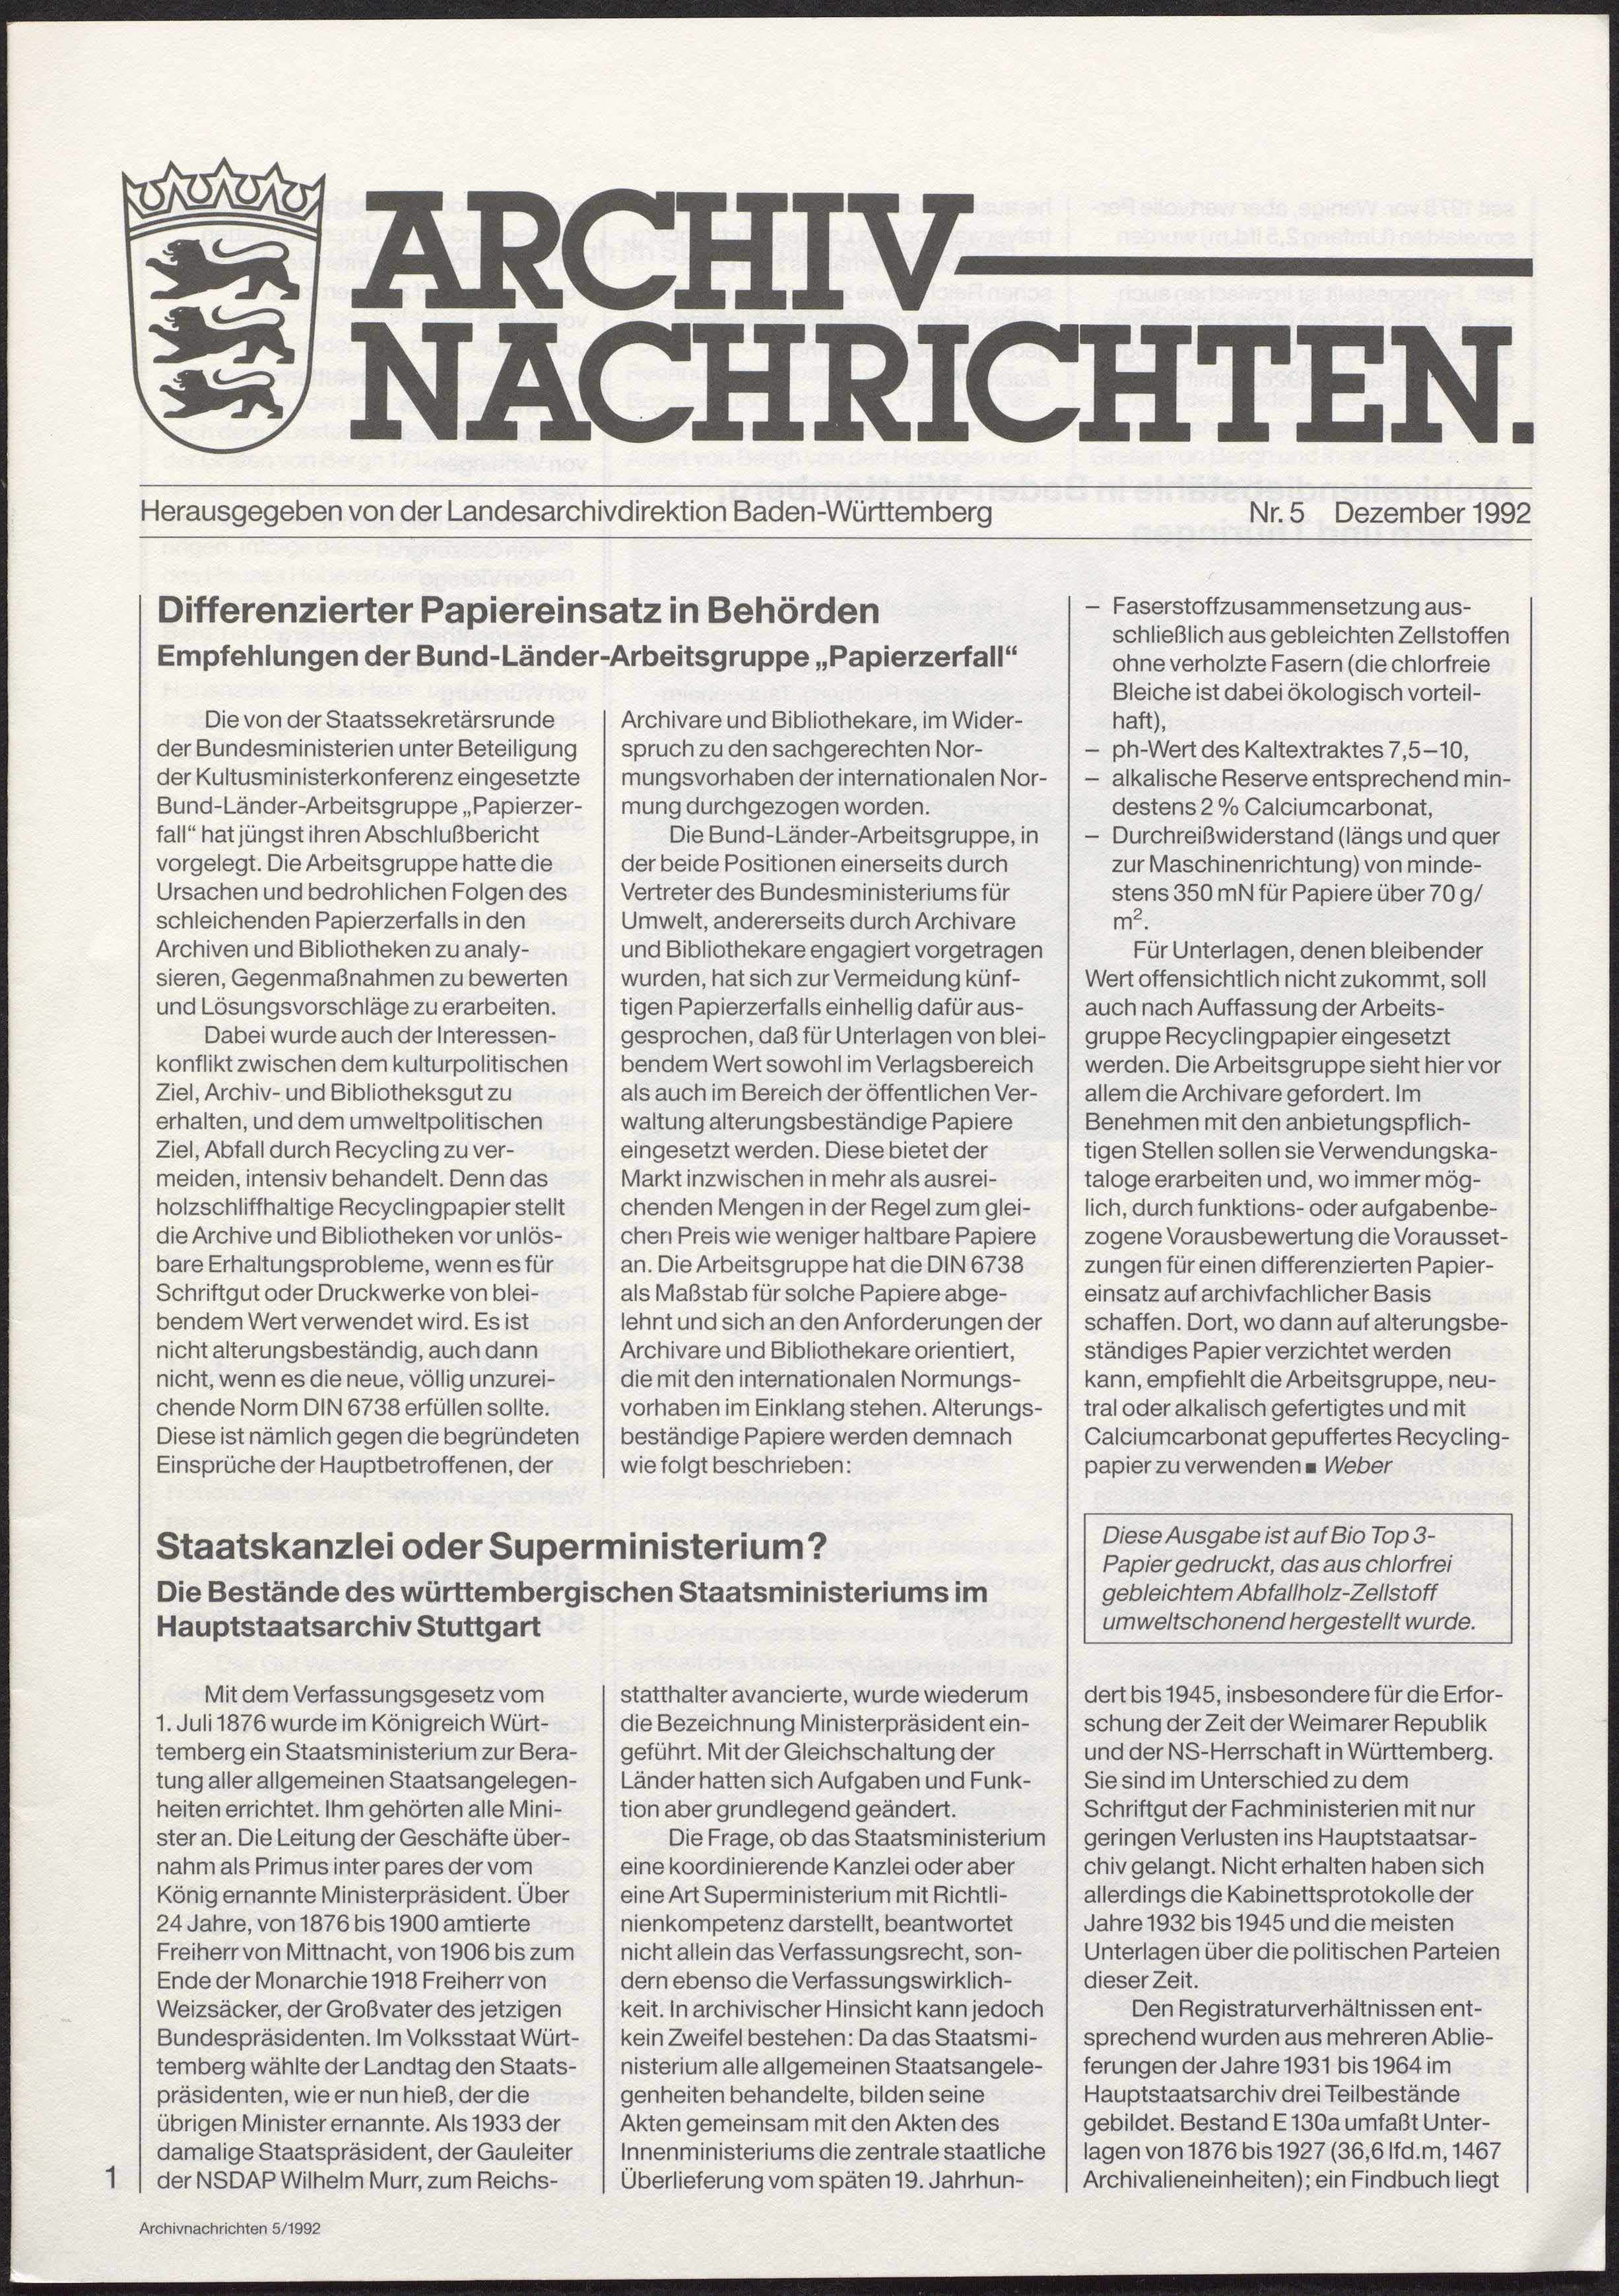                     Ansehen Nr. 5 (1992): Archivnachrichten
                